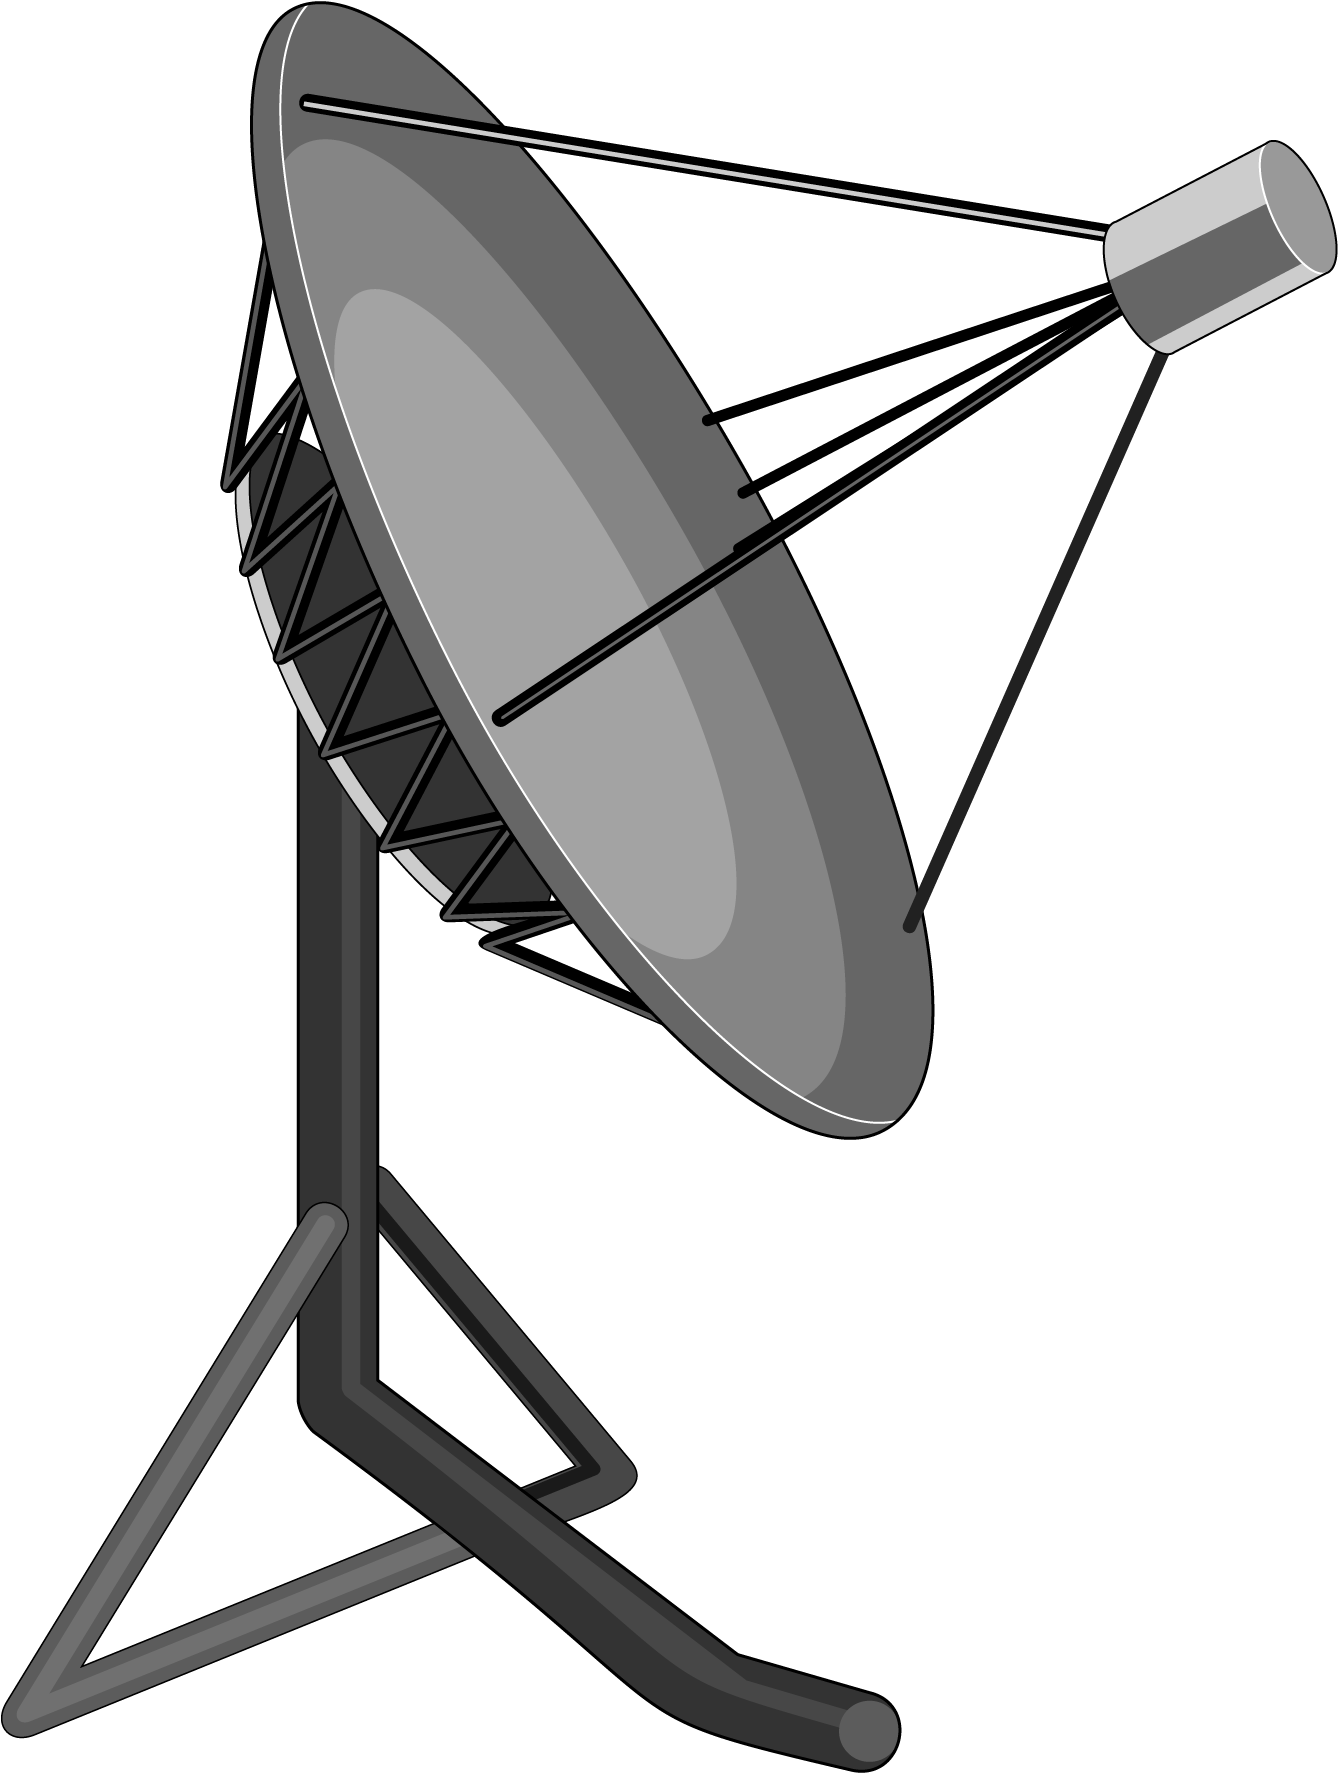 Satellite dish. Спутниковая телевизионная прямофокусная антенна. Спутниковая антенна вектор. Спутниковая тарелка рисунок. Спутниковая тарелка без фона.